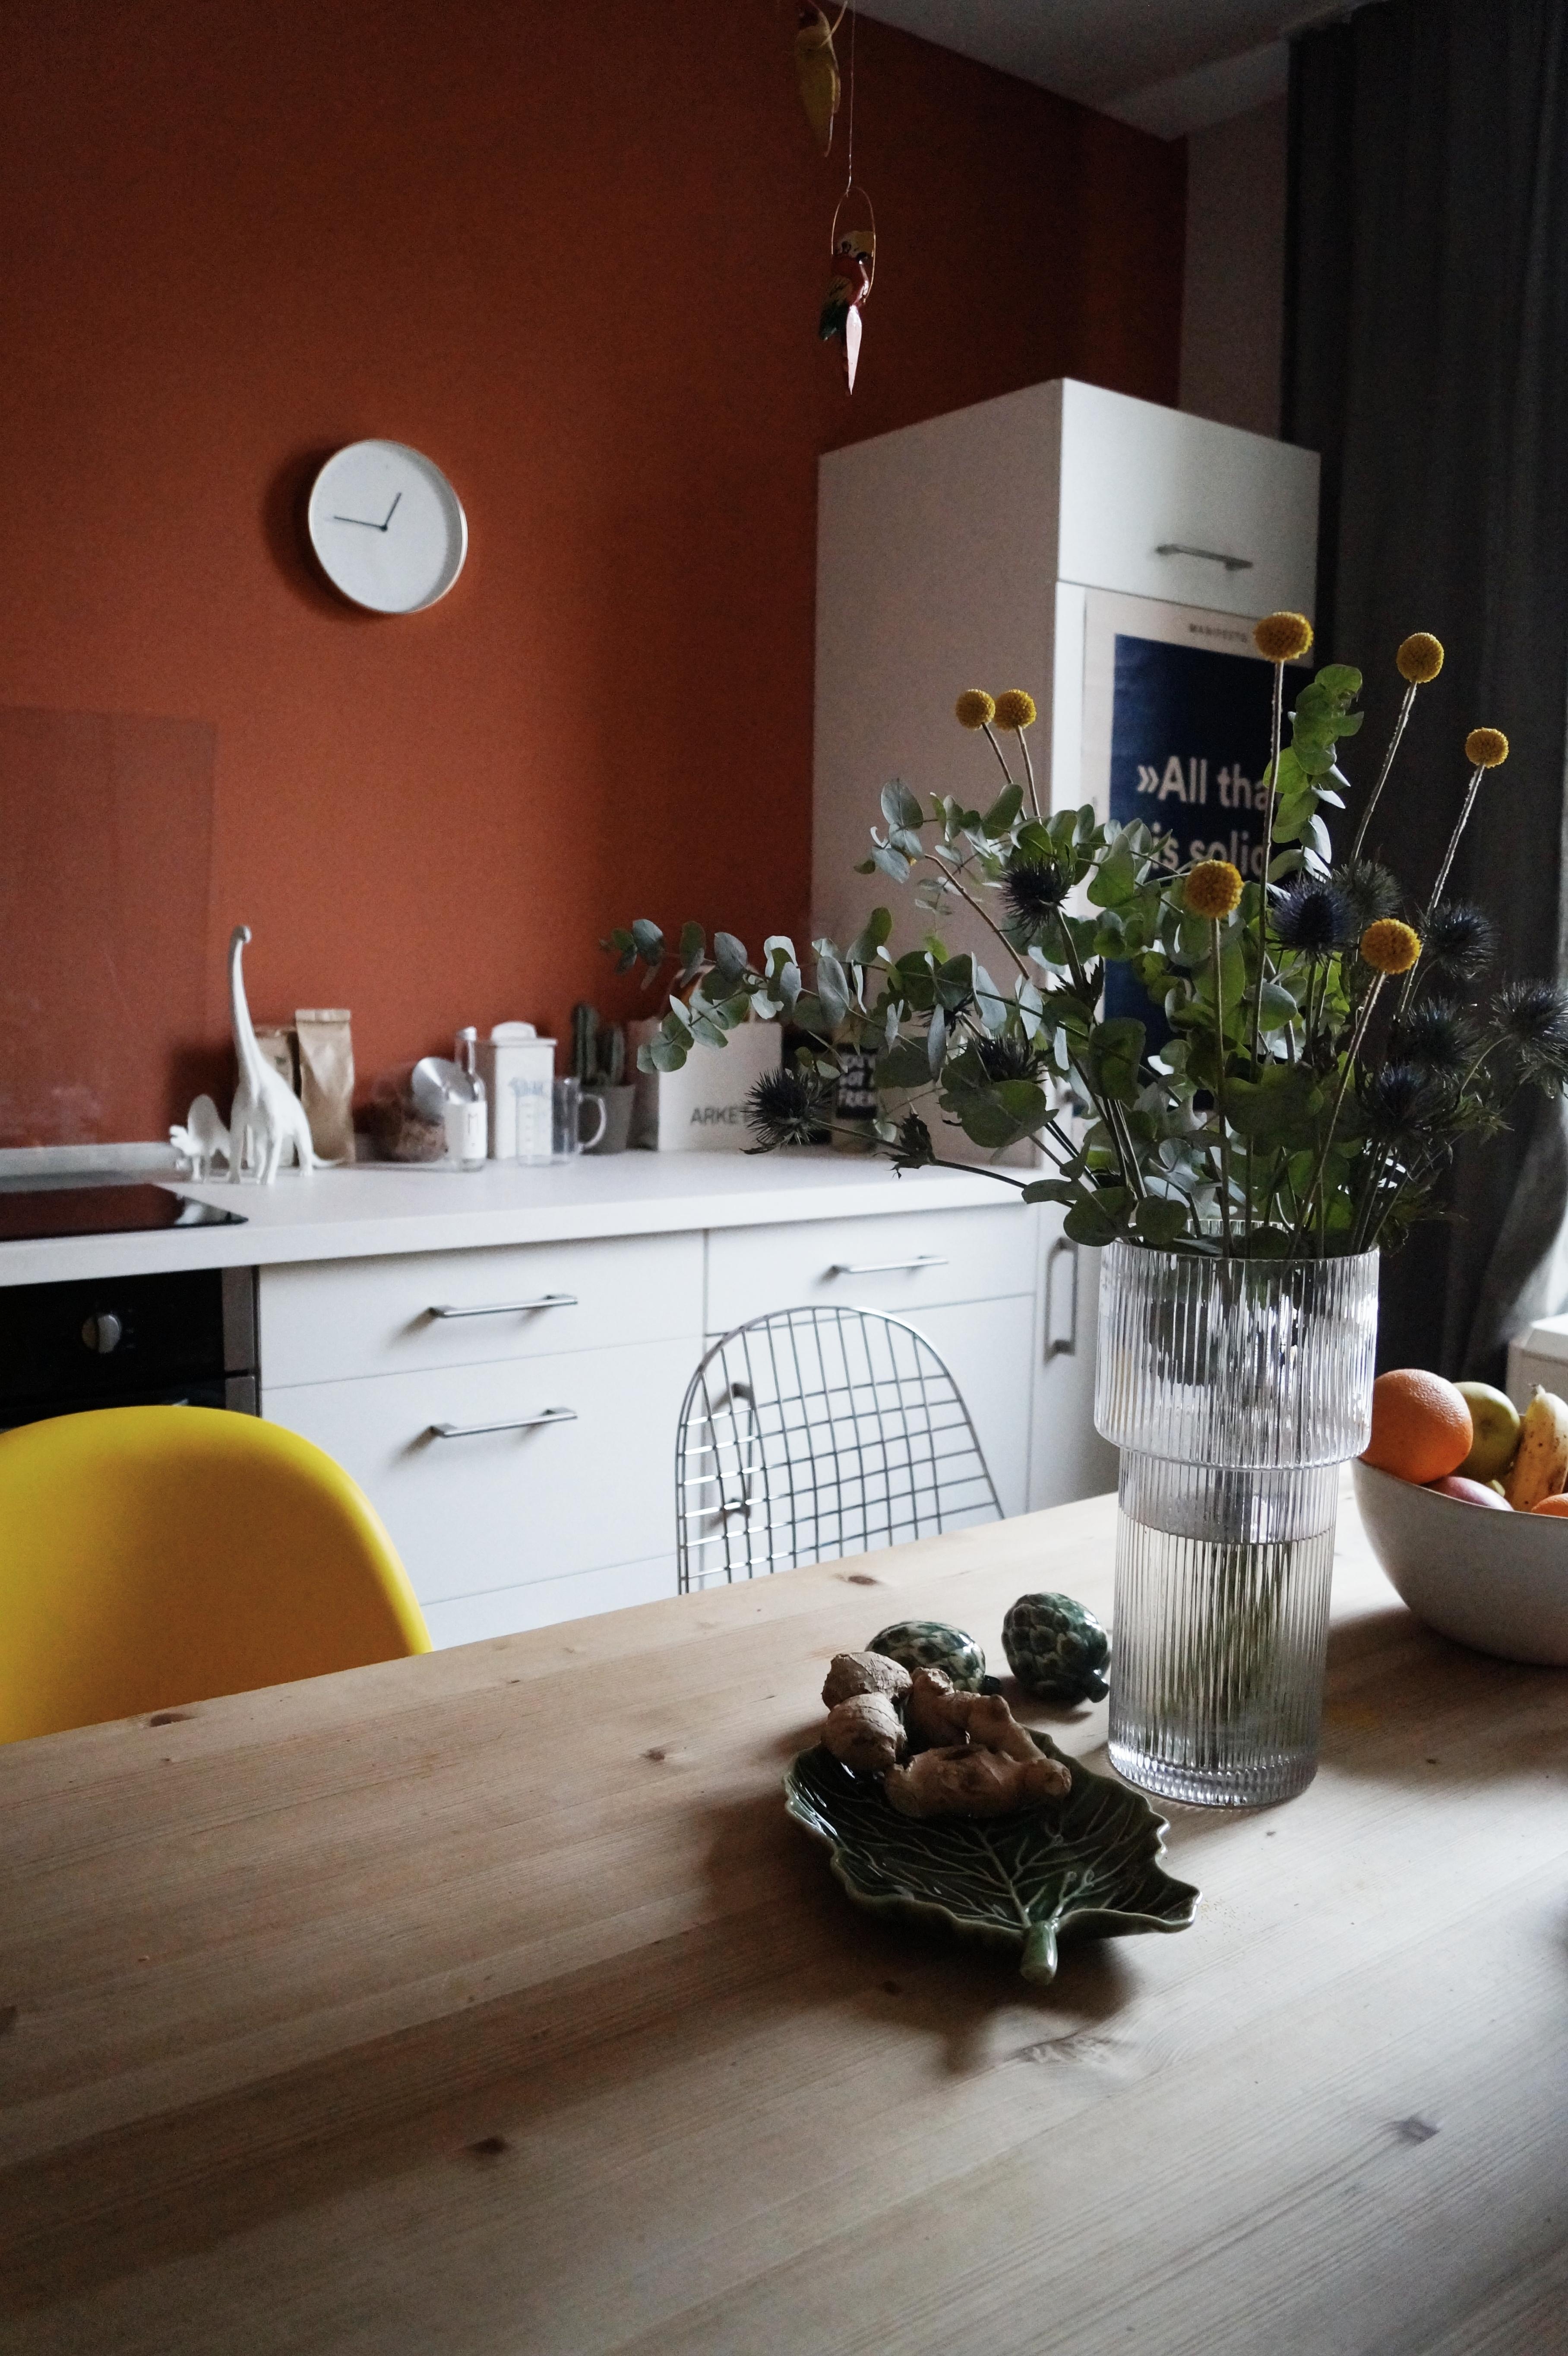 Wer hat eigentlich gesagt, Vanillepudding gehört an die Wand? #küche #münchen #farben #bunt #altbau 